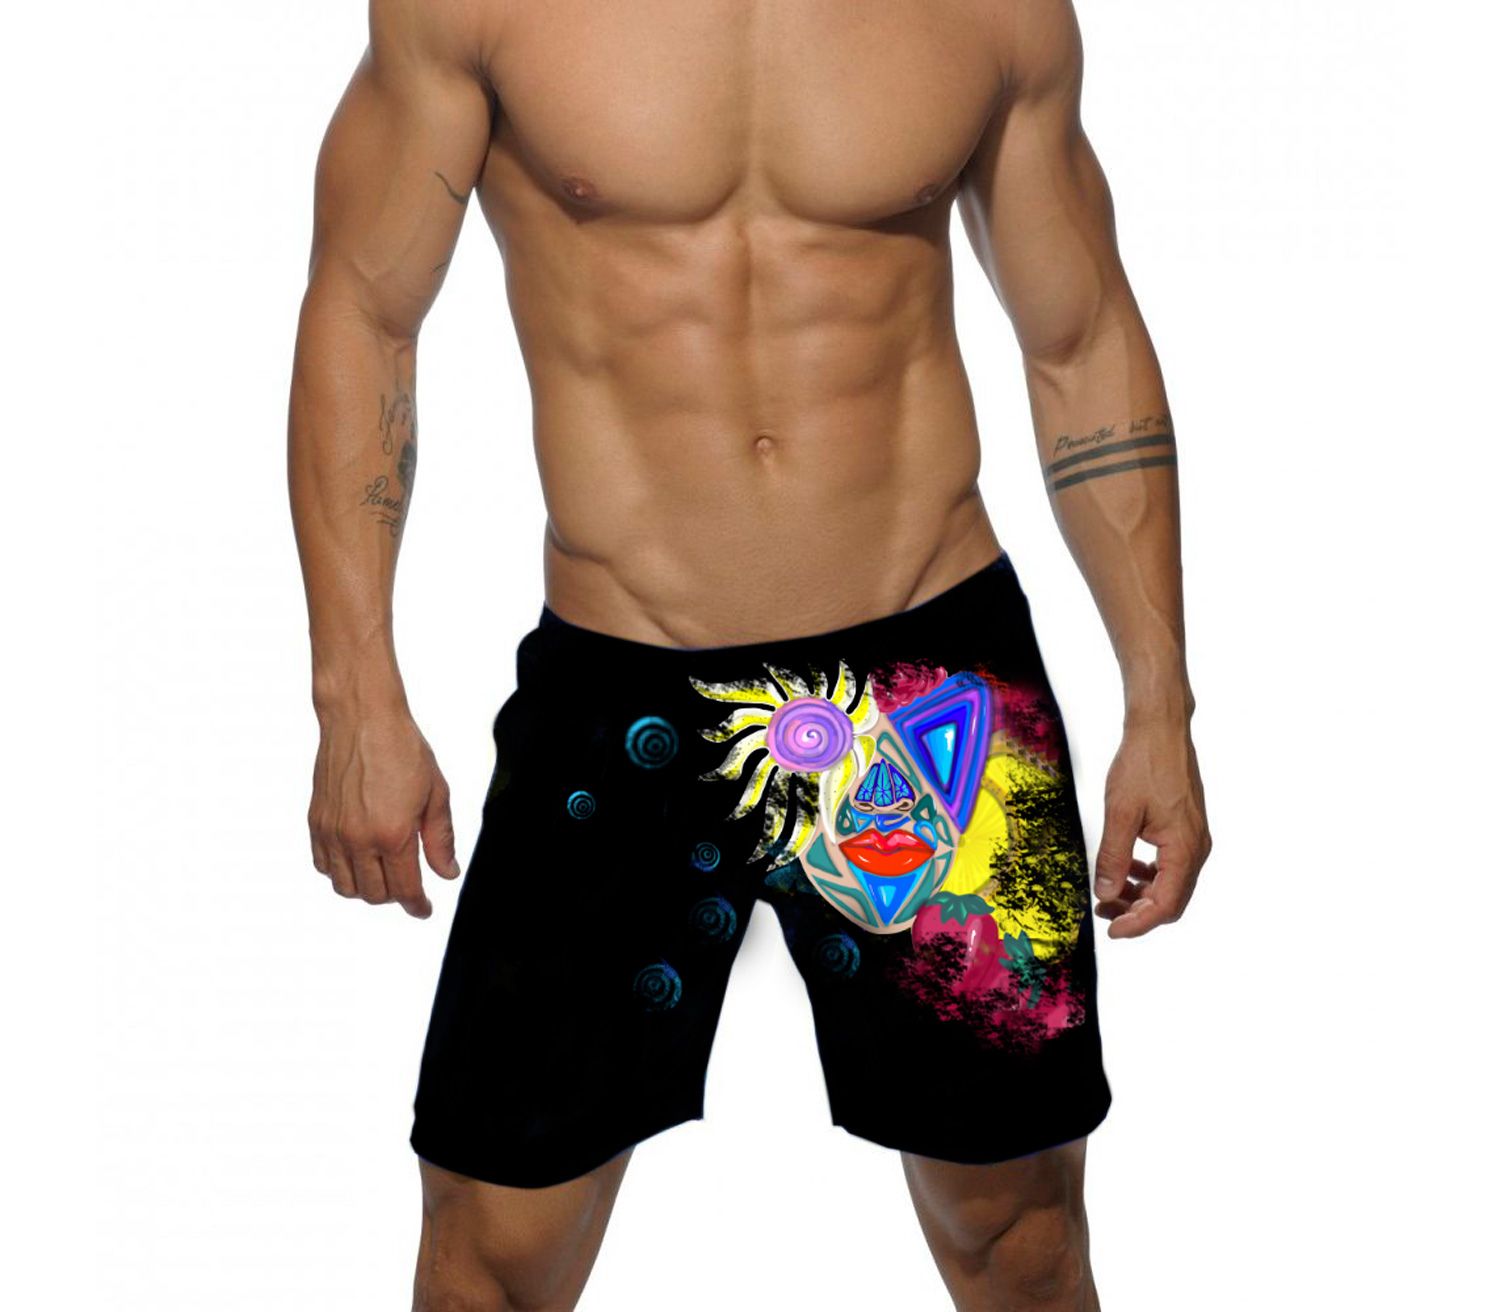 Дизайн рисунка для мужских шорт для плавания  - дизайнер vi1082